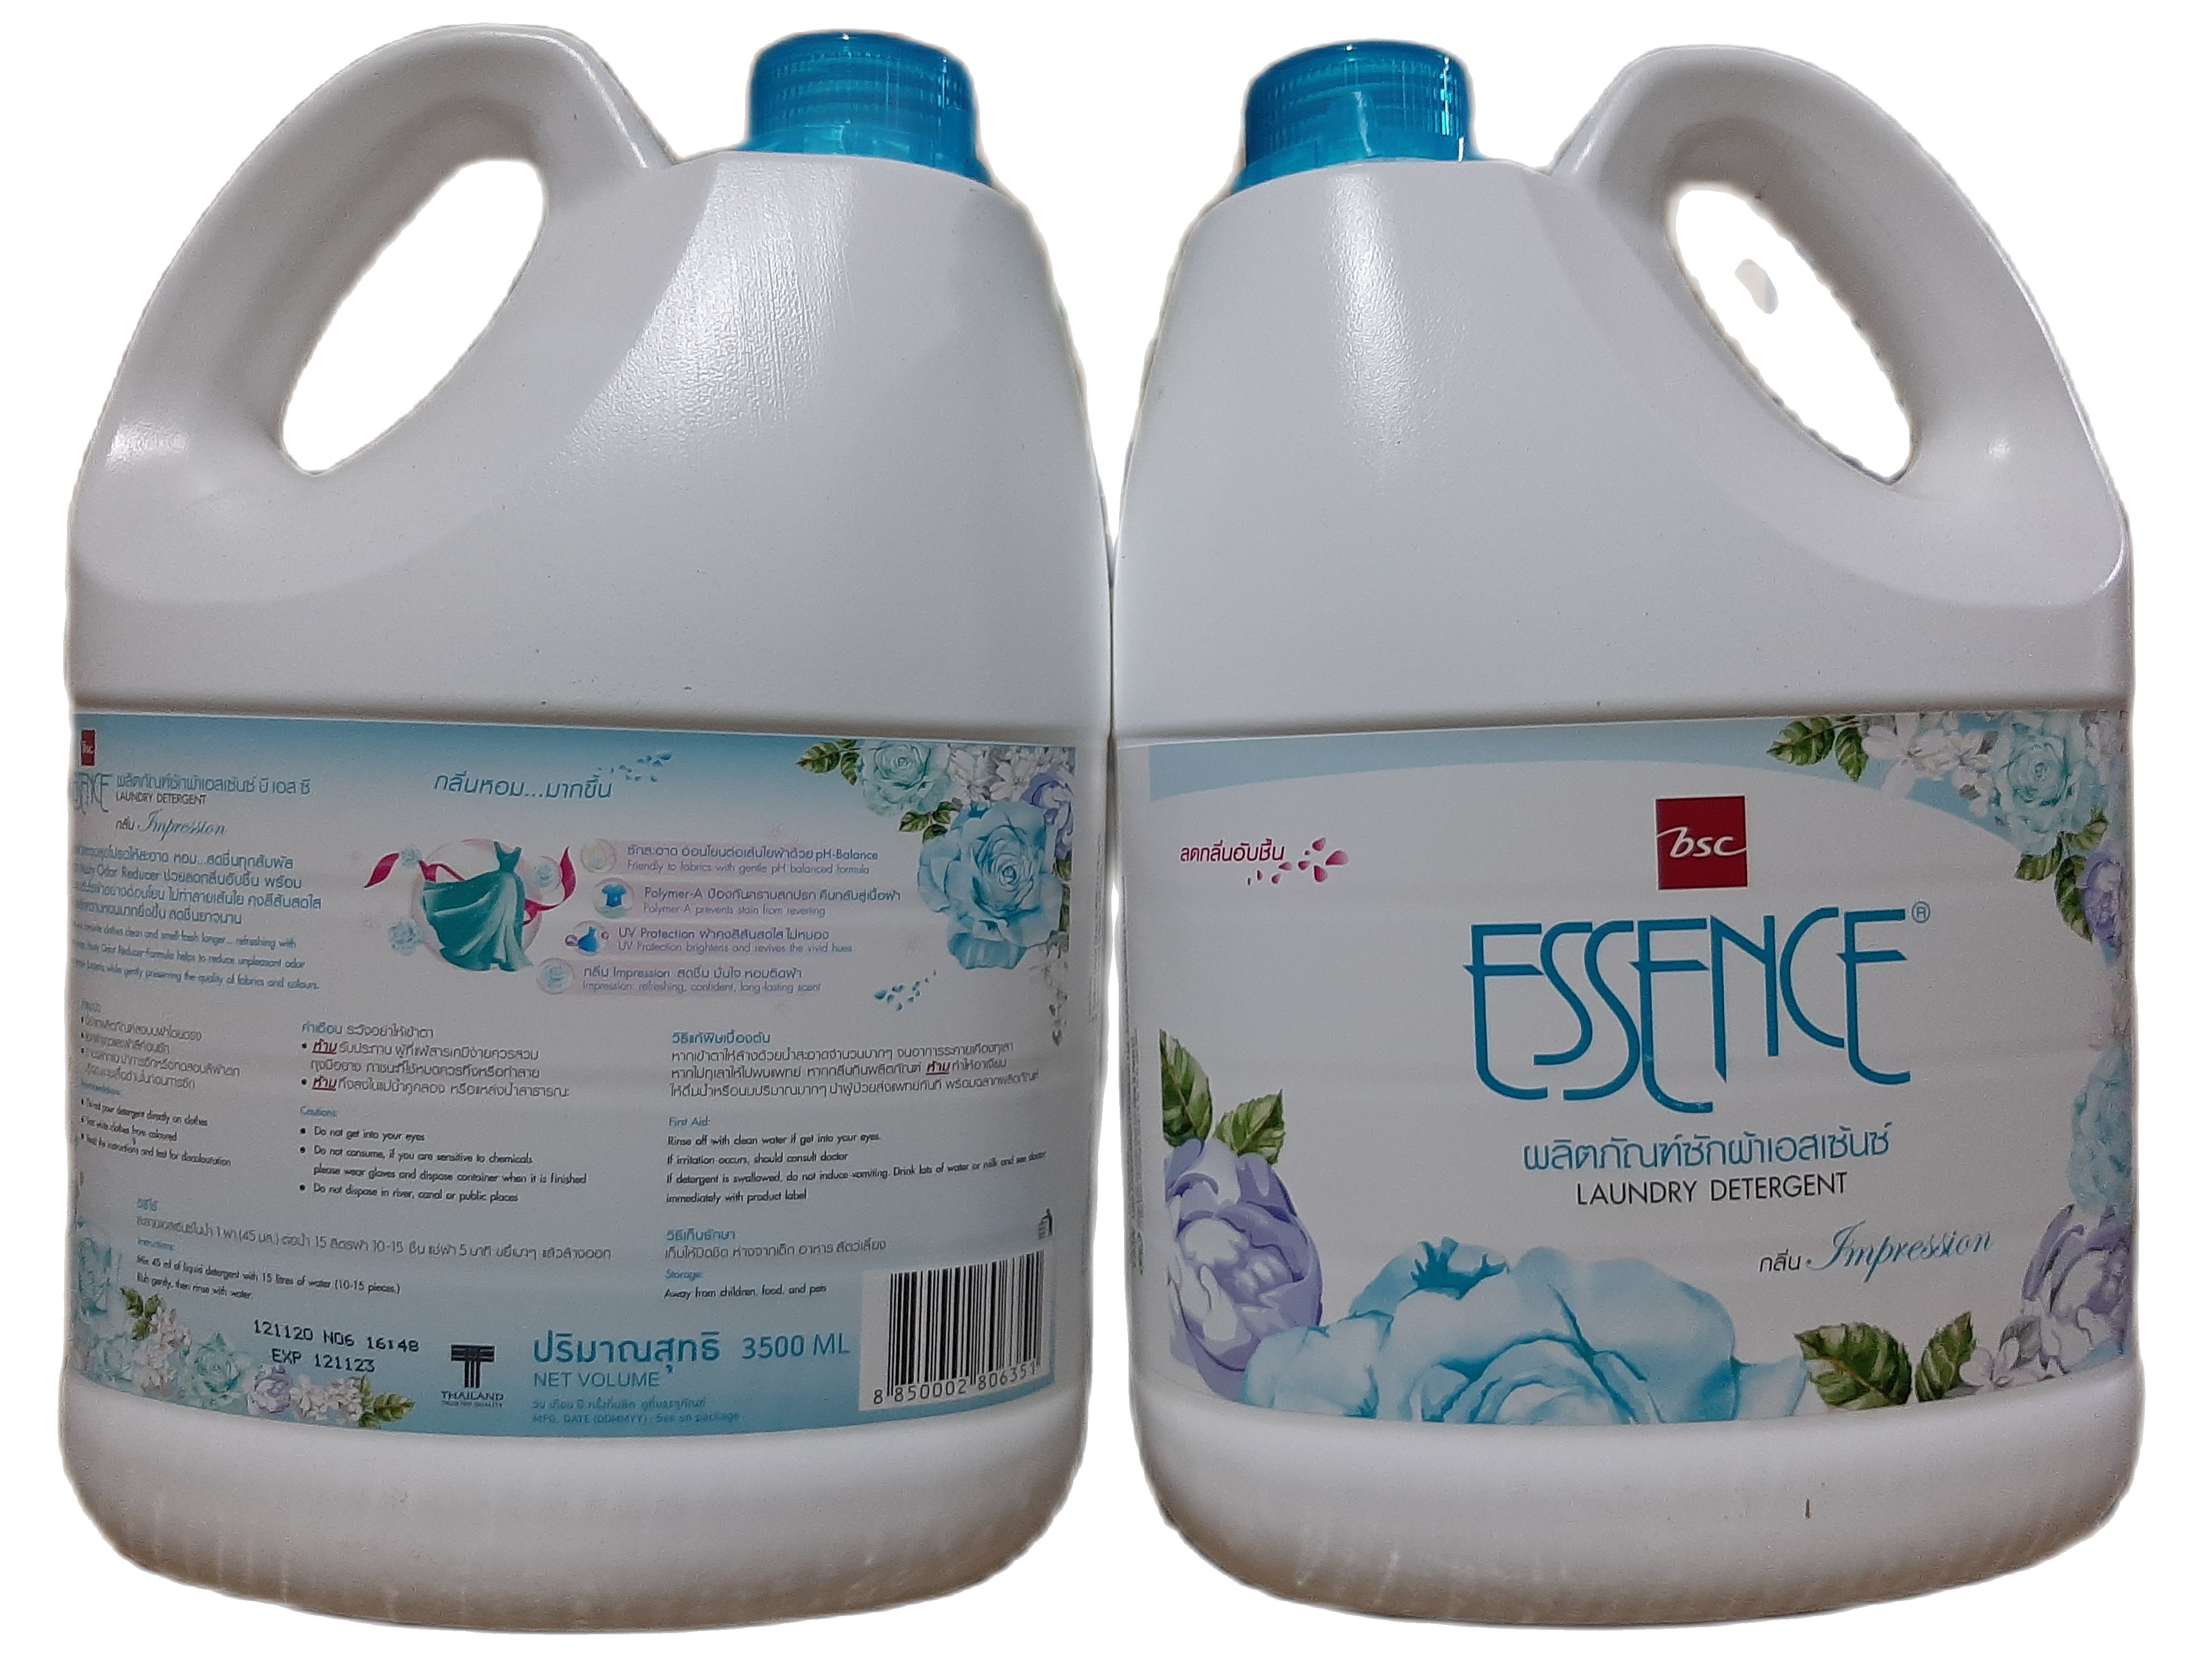 HCM KTT Nước giặt xả lưu hương ESSENCE can 3500 ml màu xanh Thái Lan